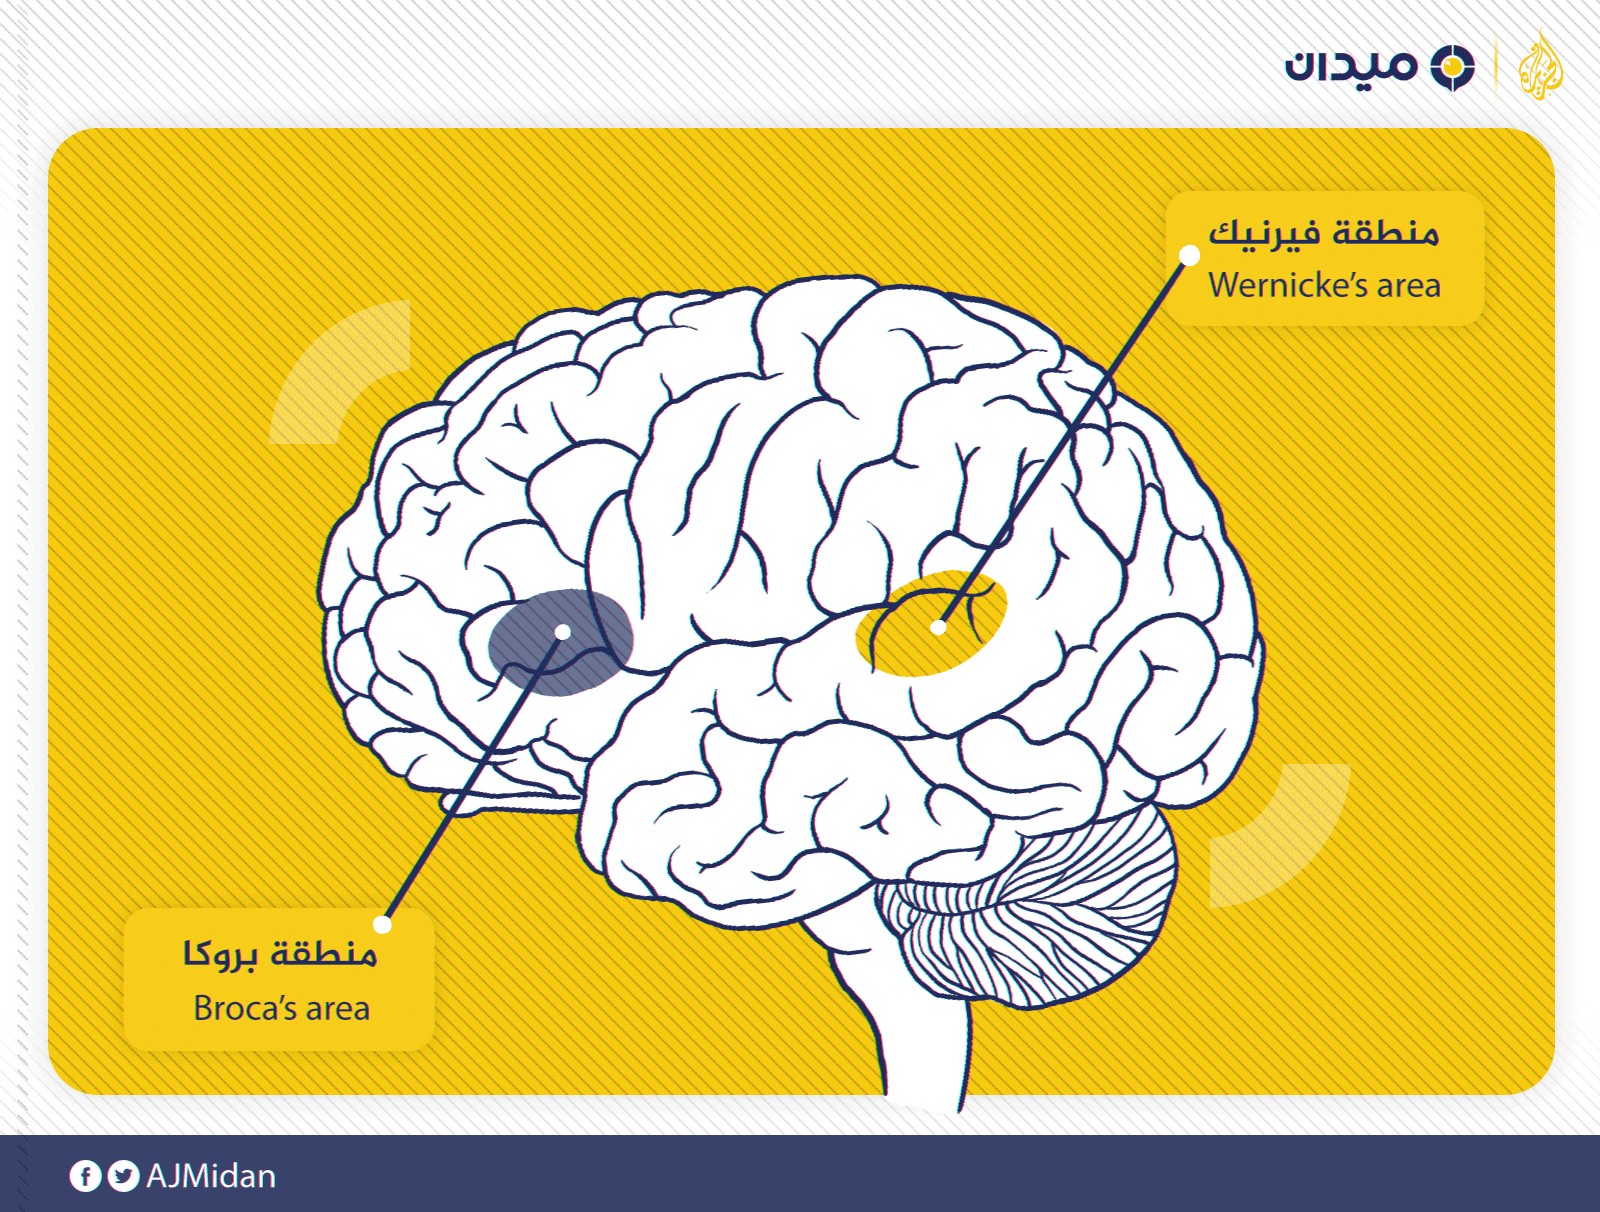 دراسة: ما هي مساحة التخزينٍ اللازمة في الدماغ لتعلم لغة ما..